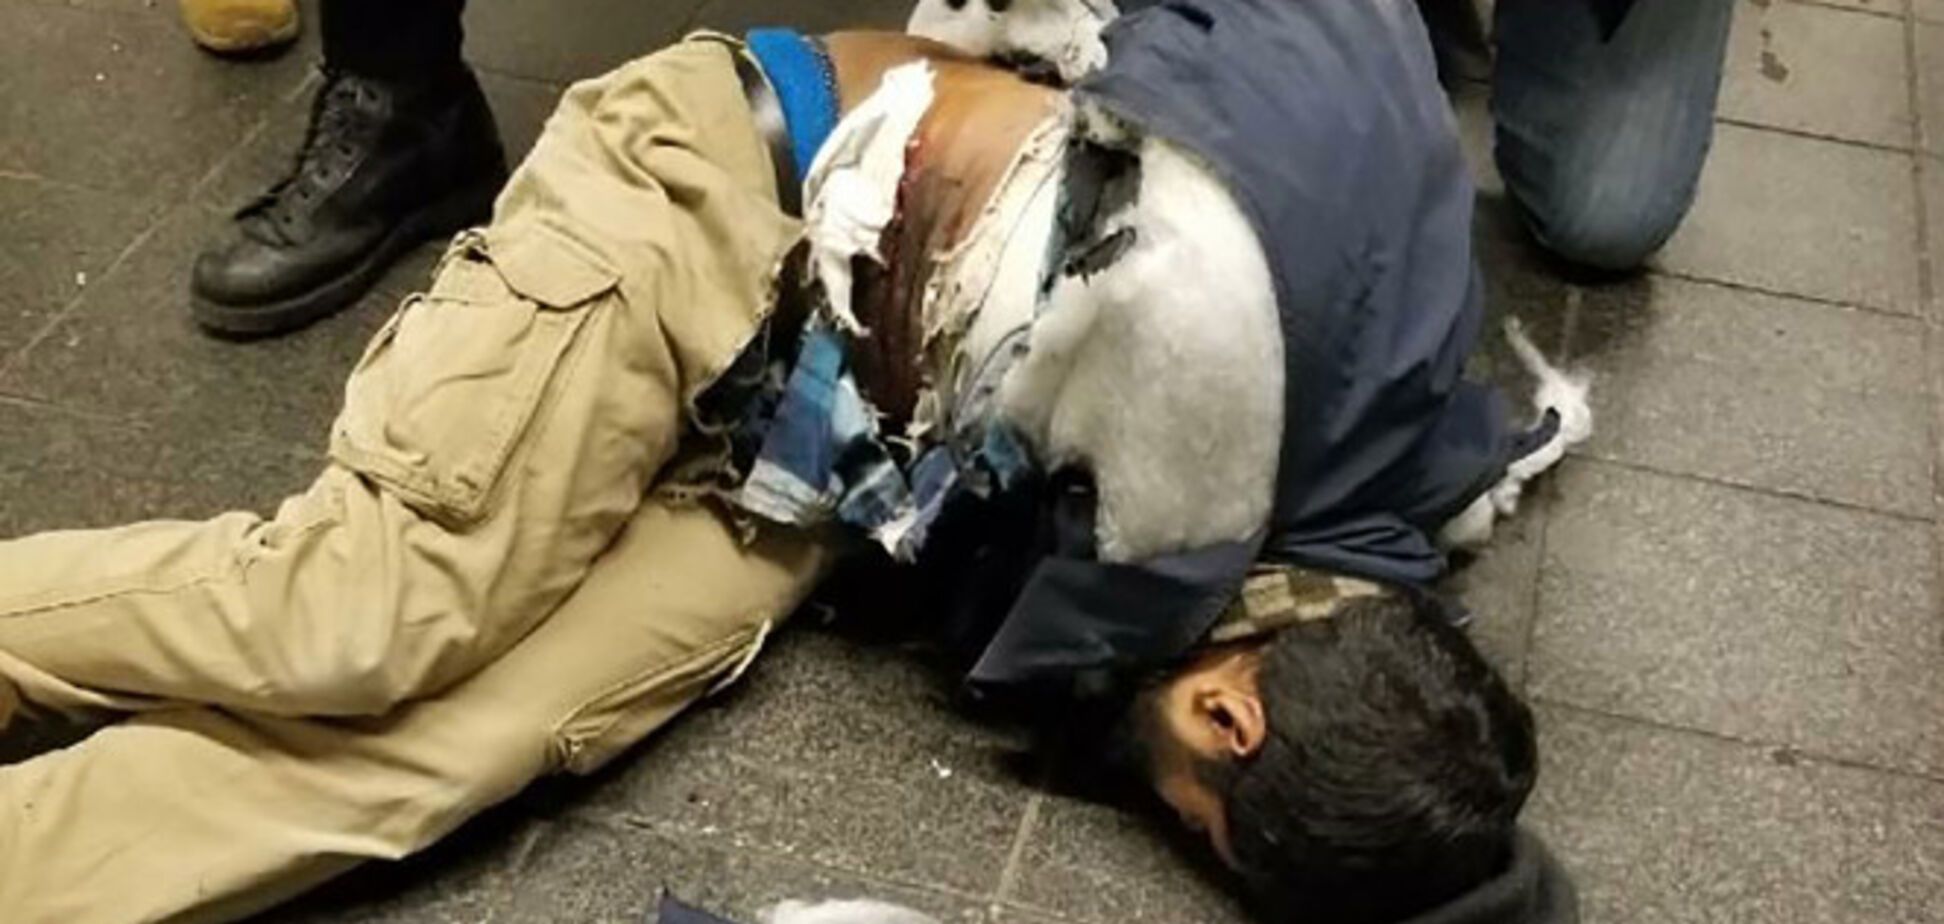 Теракт у Нью-Йорку: ЗМІ озвучили версію смертника